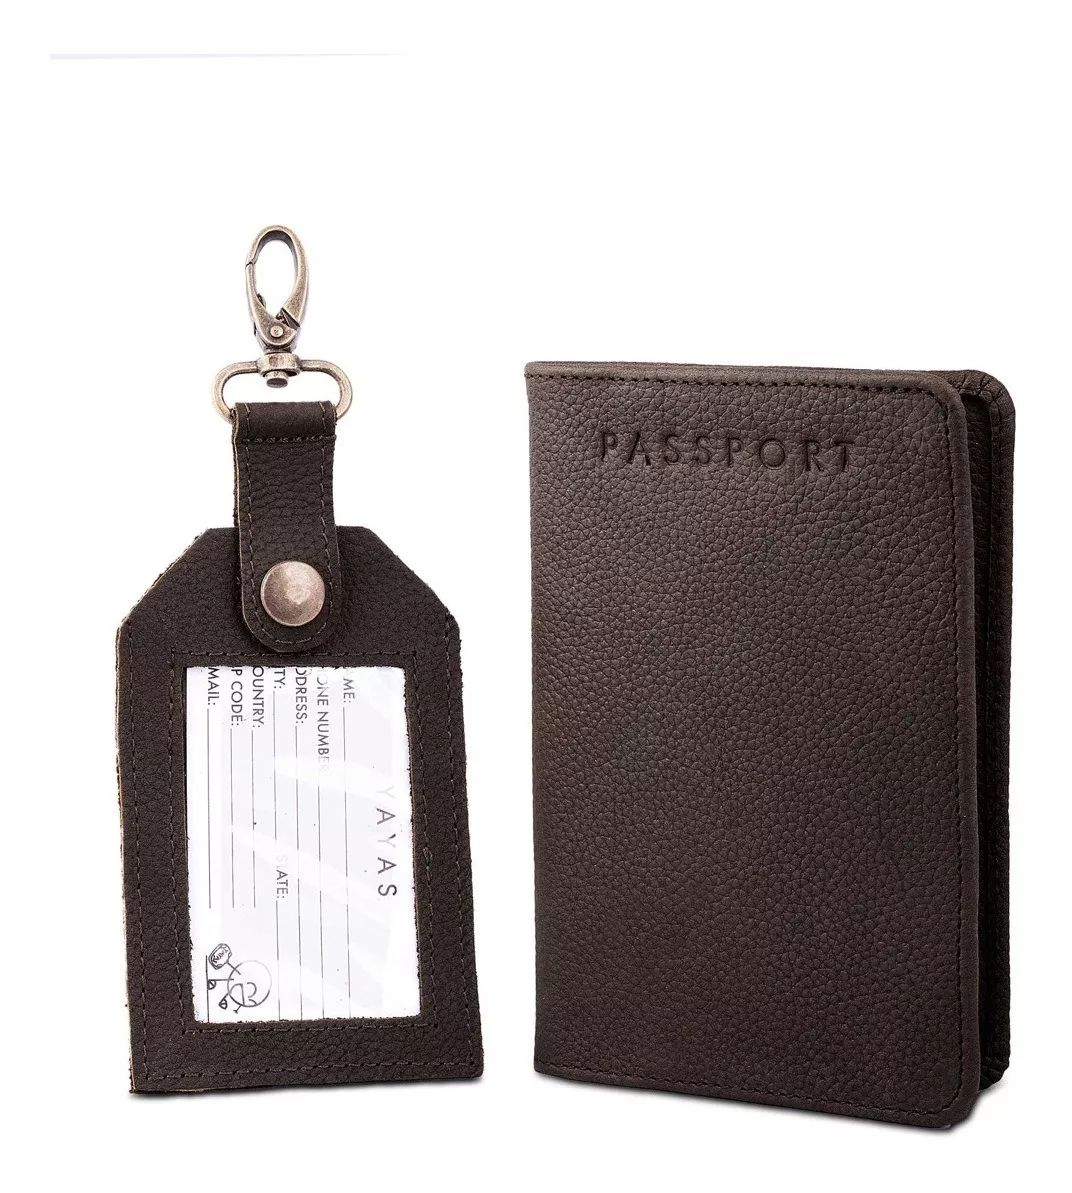 Segunda imagen para búsqueda de porta pasaporte piel